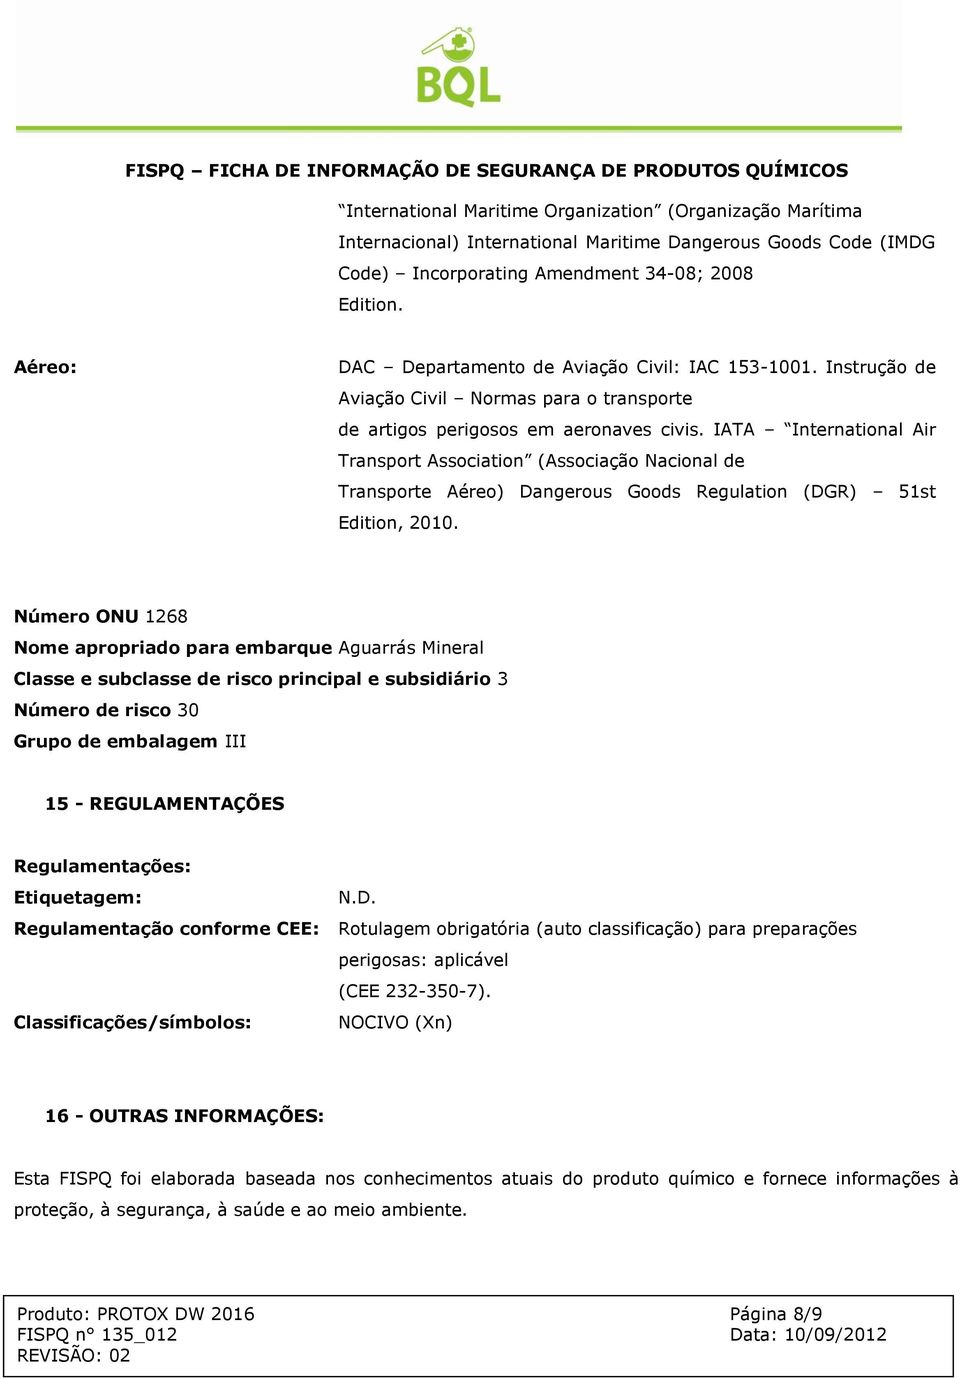 IATA International Air Transport Association (Associação Nacional de Transporte Aéreo) Dangerous Goods Regulation (DGR) 51st Edition, 2010.